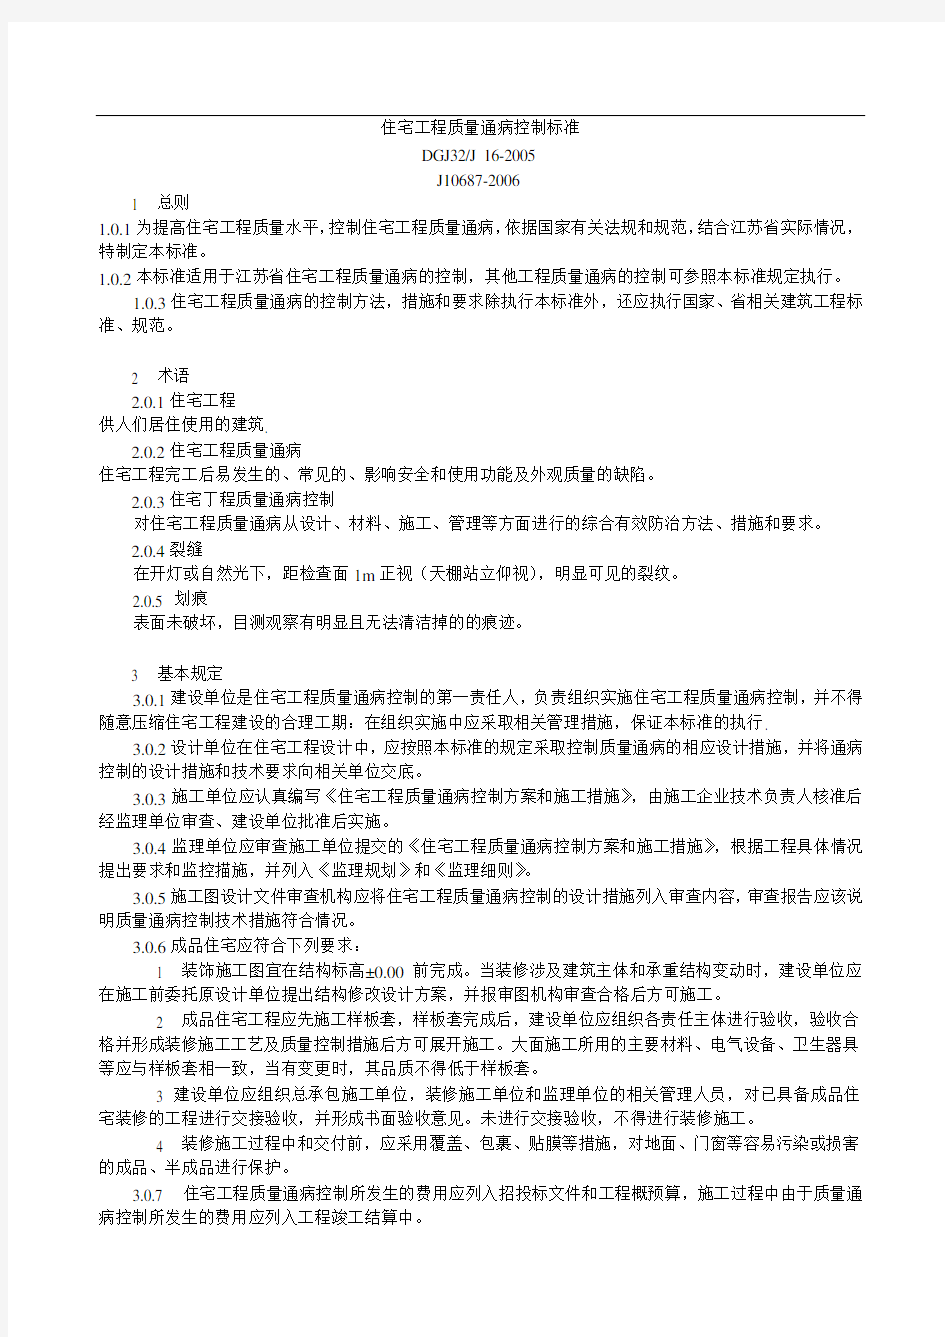 (上传)江苏省工程建设标准-住宅工程质量通病控制标准2014